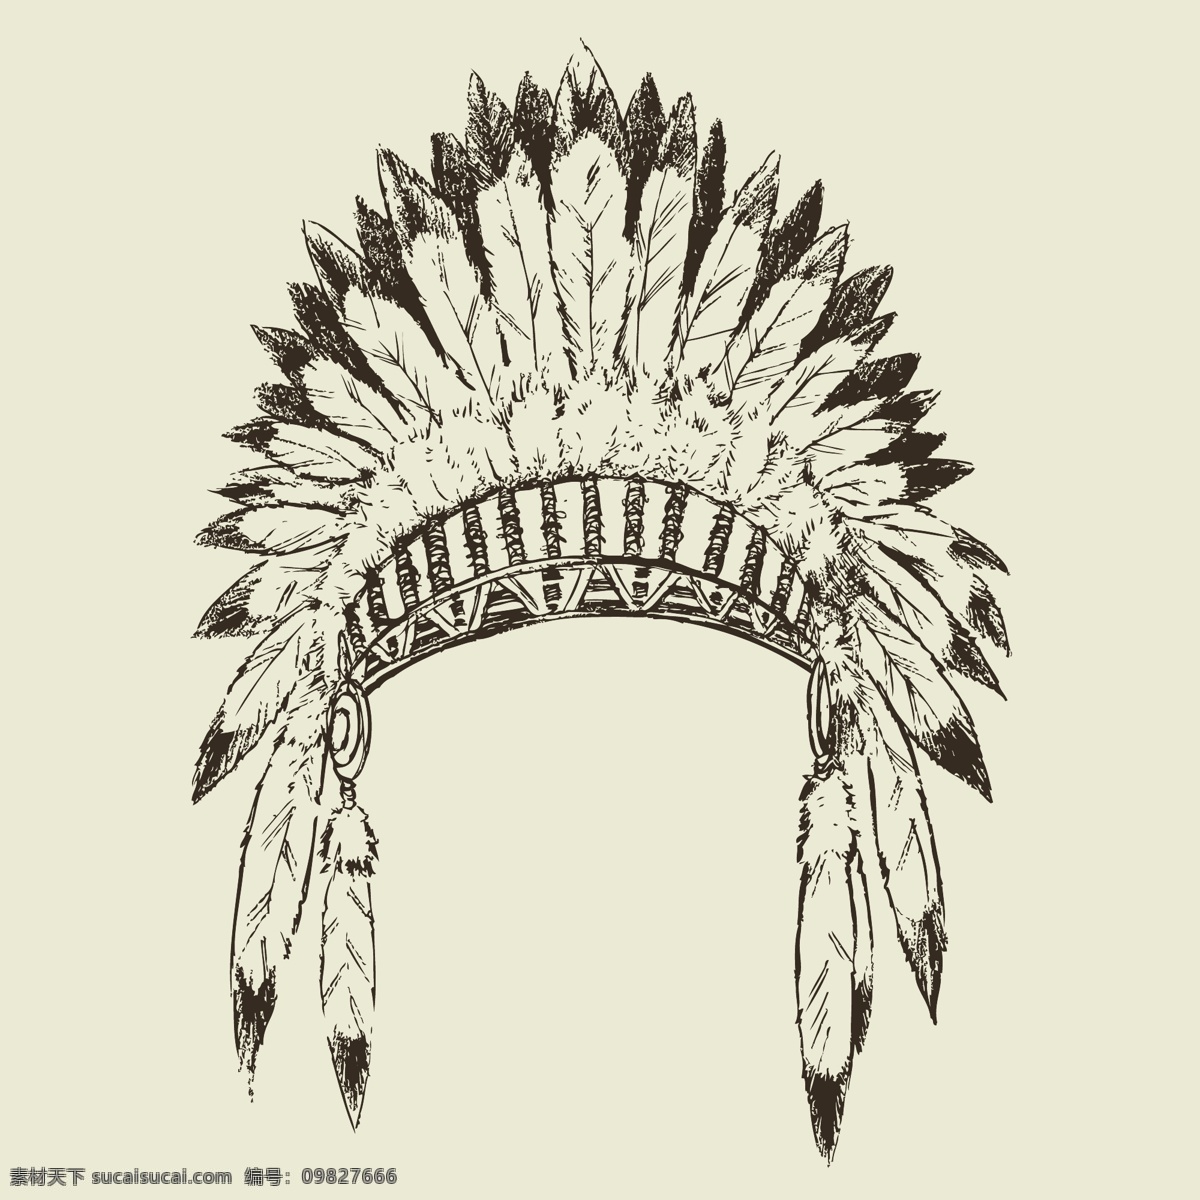 印第安 部落 领袖 帽子 矢量 印度 主要的帽子 羽毛的帽子 头巾 向量的帽子